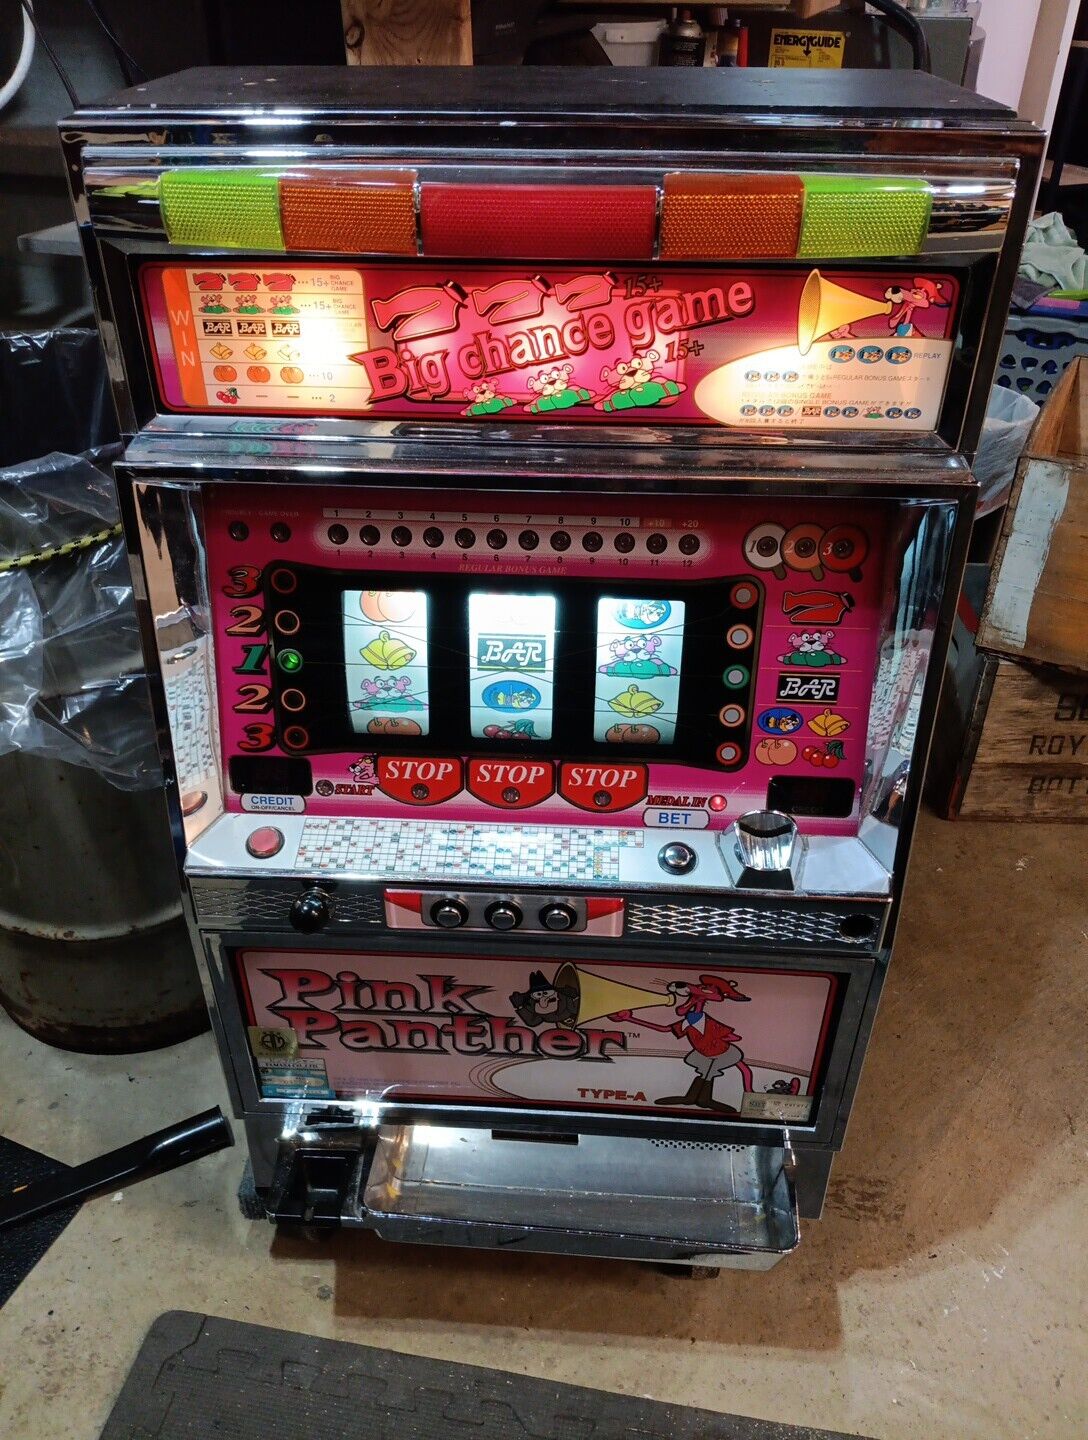 Vintage Pink Panther Slot Machine Pachislo Big Chance Game Yamasa Token&Cash